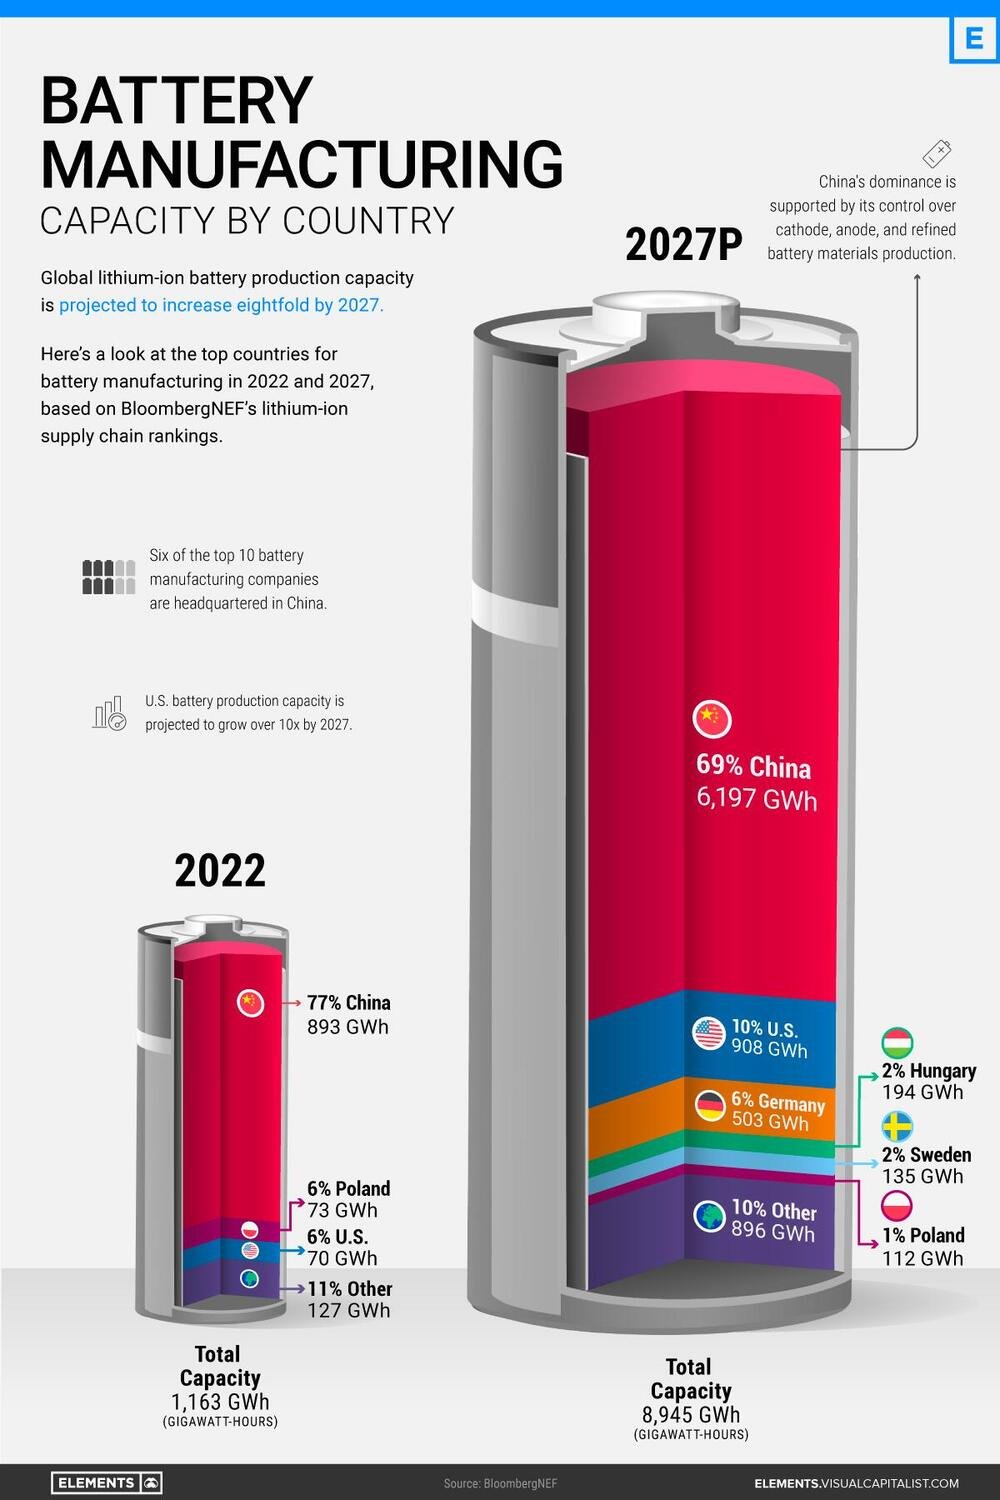 La capacit&agrave; produttiva della Cina per le batterie, situazione al 2022 e al 2027 in GWh